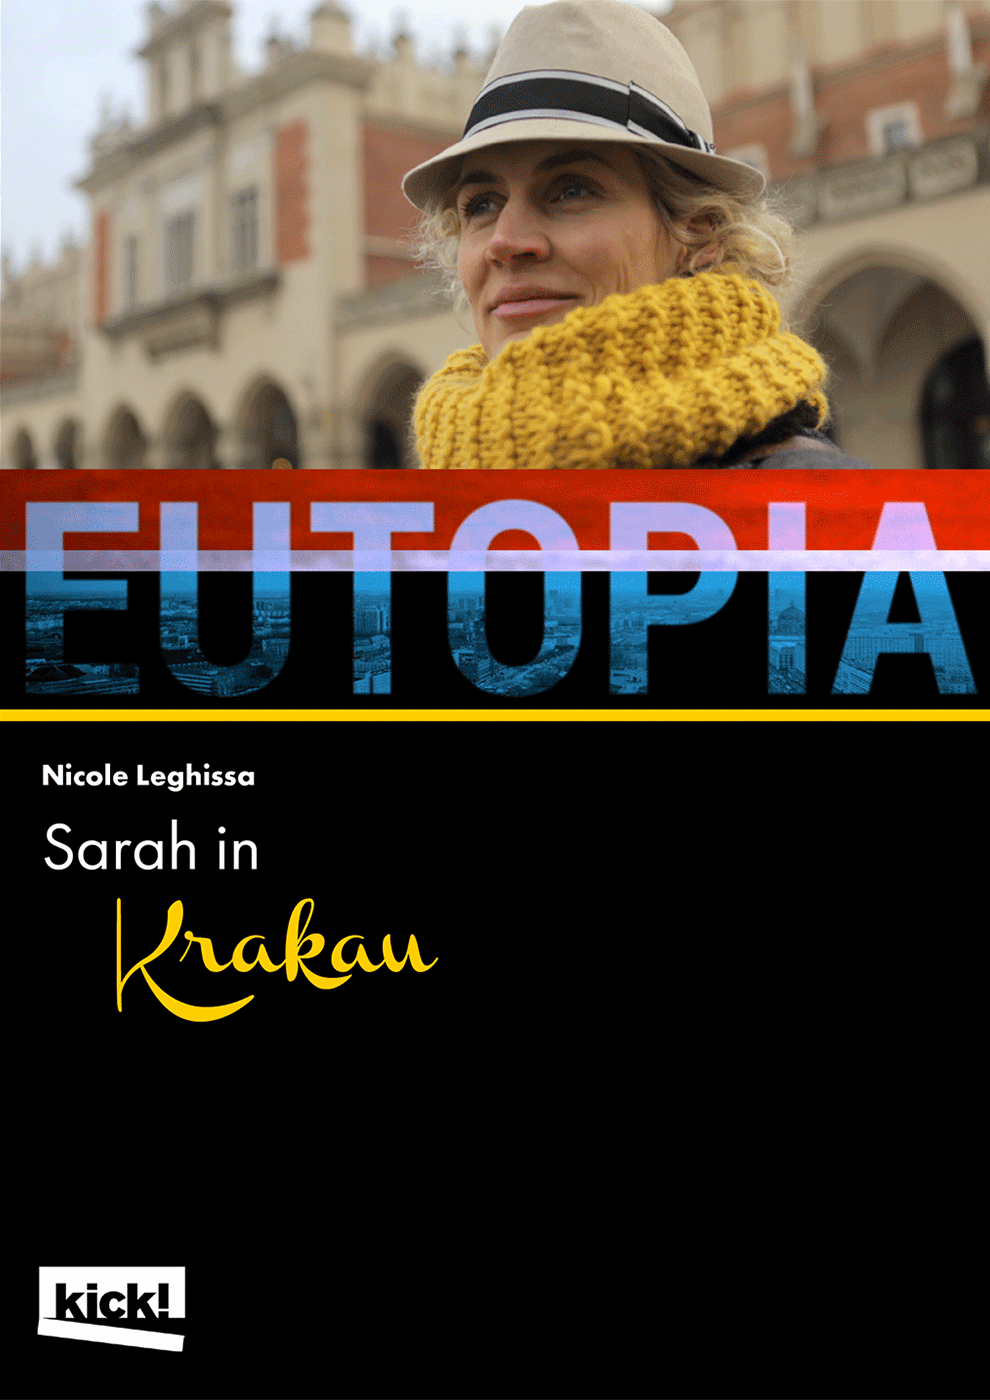 EUTOPIA - Sarah in Krakau Ein Film von Nicole Leghissa